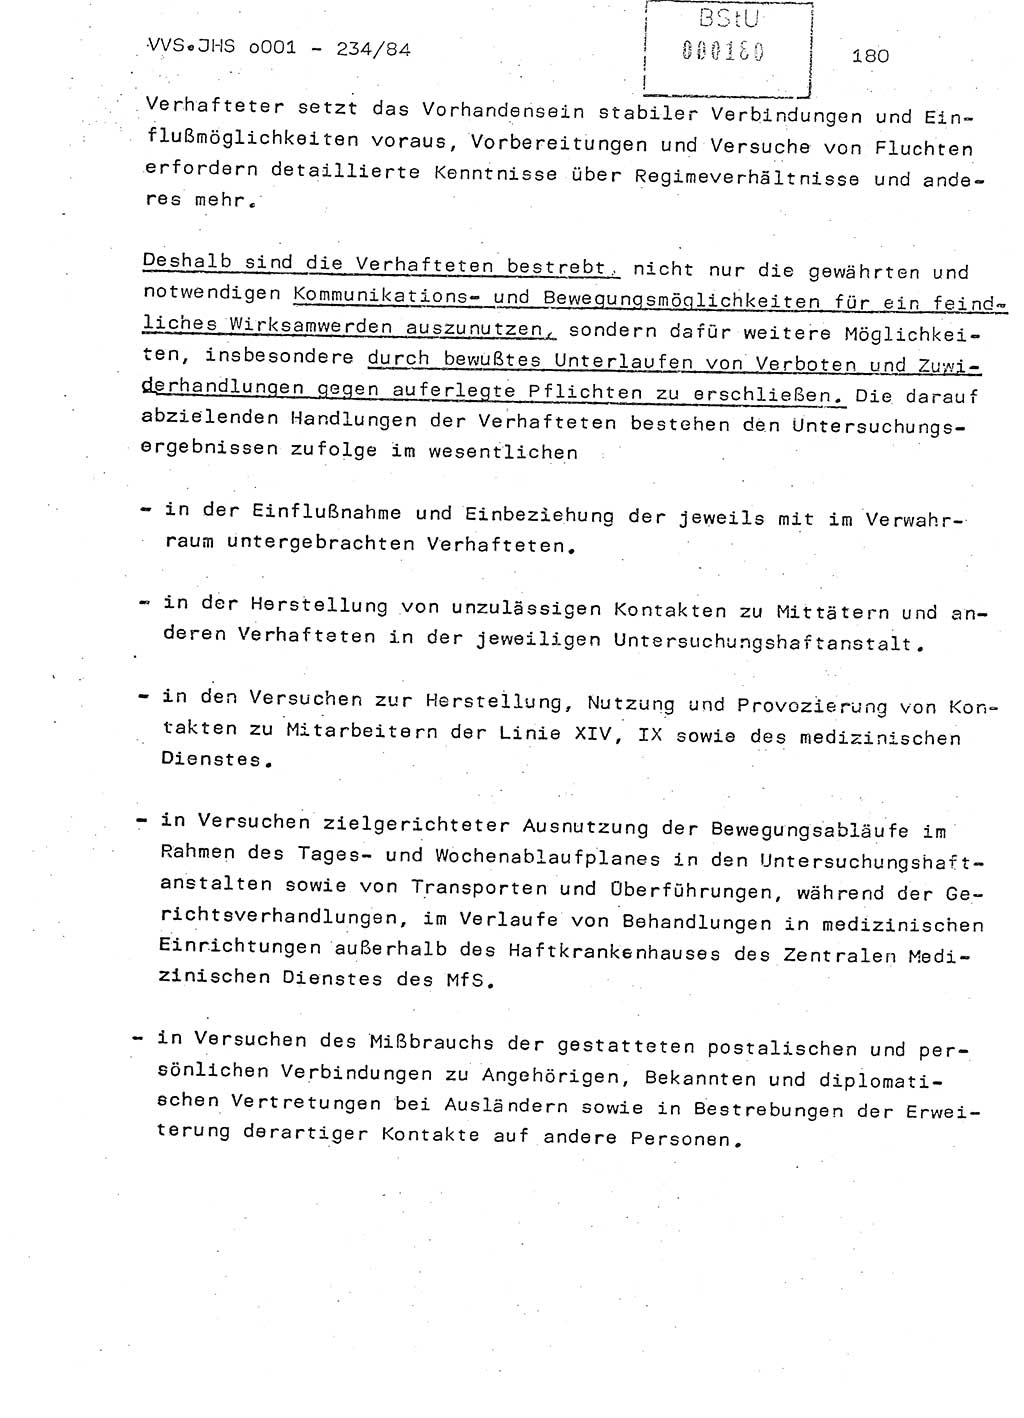 Dissertation Oberst Siegfried Rataizick (Abt. ⅩⅣ), Oberstleutnant Volkmar Heinz (Abt. ⅩⅣ), Oberstleutnant Werner Stein (HA Ⅸ), Hauptmann Heinz Conrad (JHS), Ministerium für Staatssicherheit (MfS) [Deutsche Demokratische Republik (DDR)], Juristische Hochschule (JHS), Vertrauliche Verschlußsache (VVS) o001-234/84, Potsdam 1984, Seite 180 (Diss. MfS DDR JHS VVS o001-234/84 1984, S. 180)